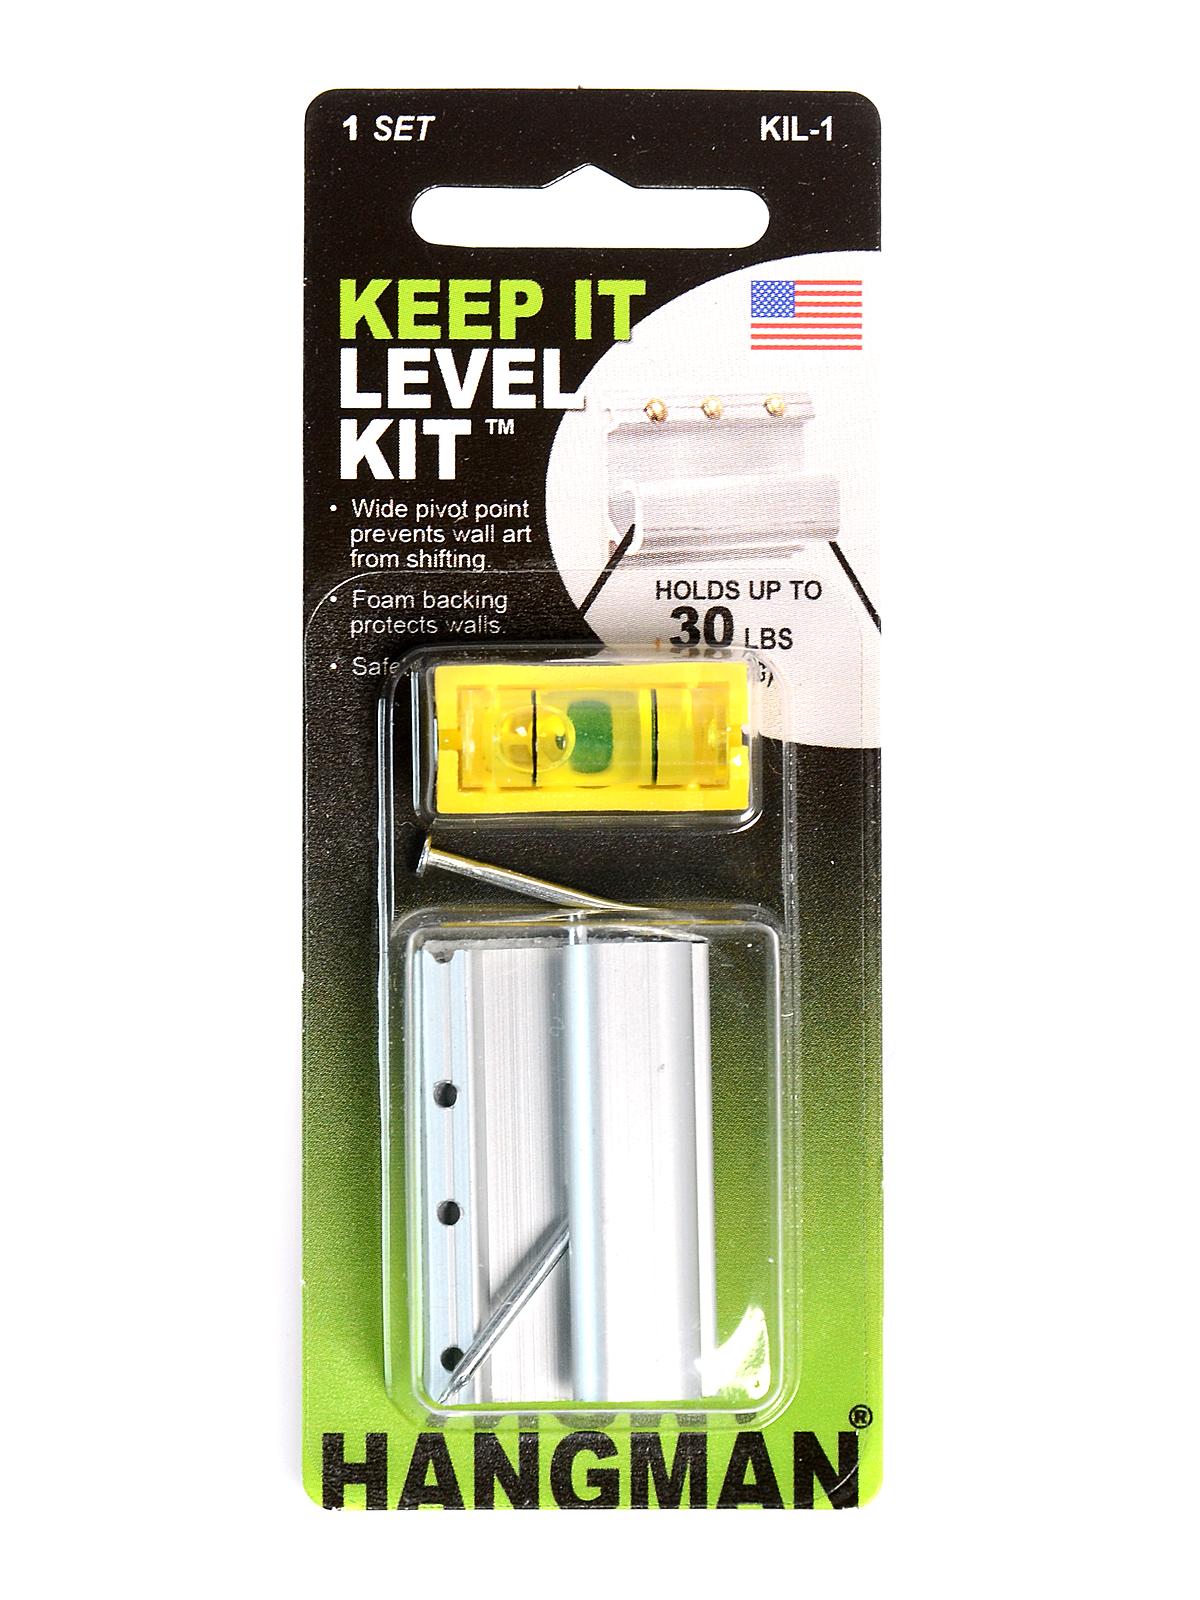 Keep It Level Kit Kit